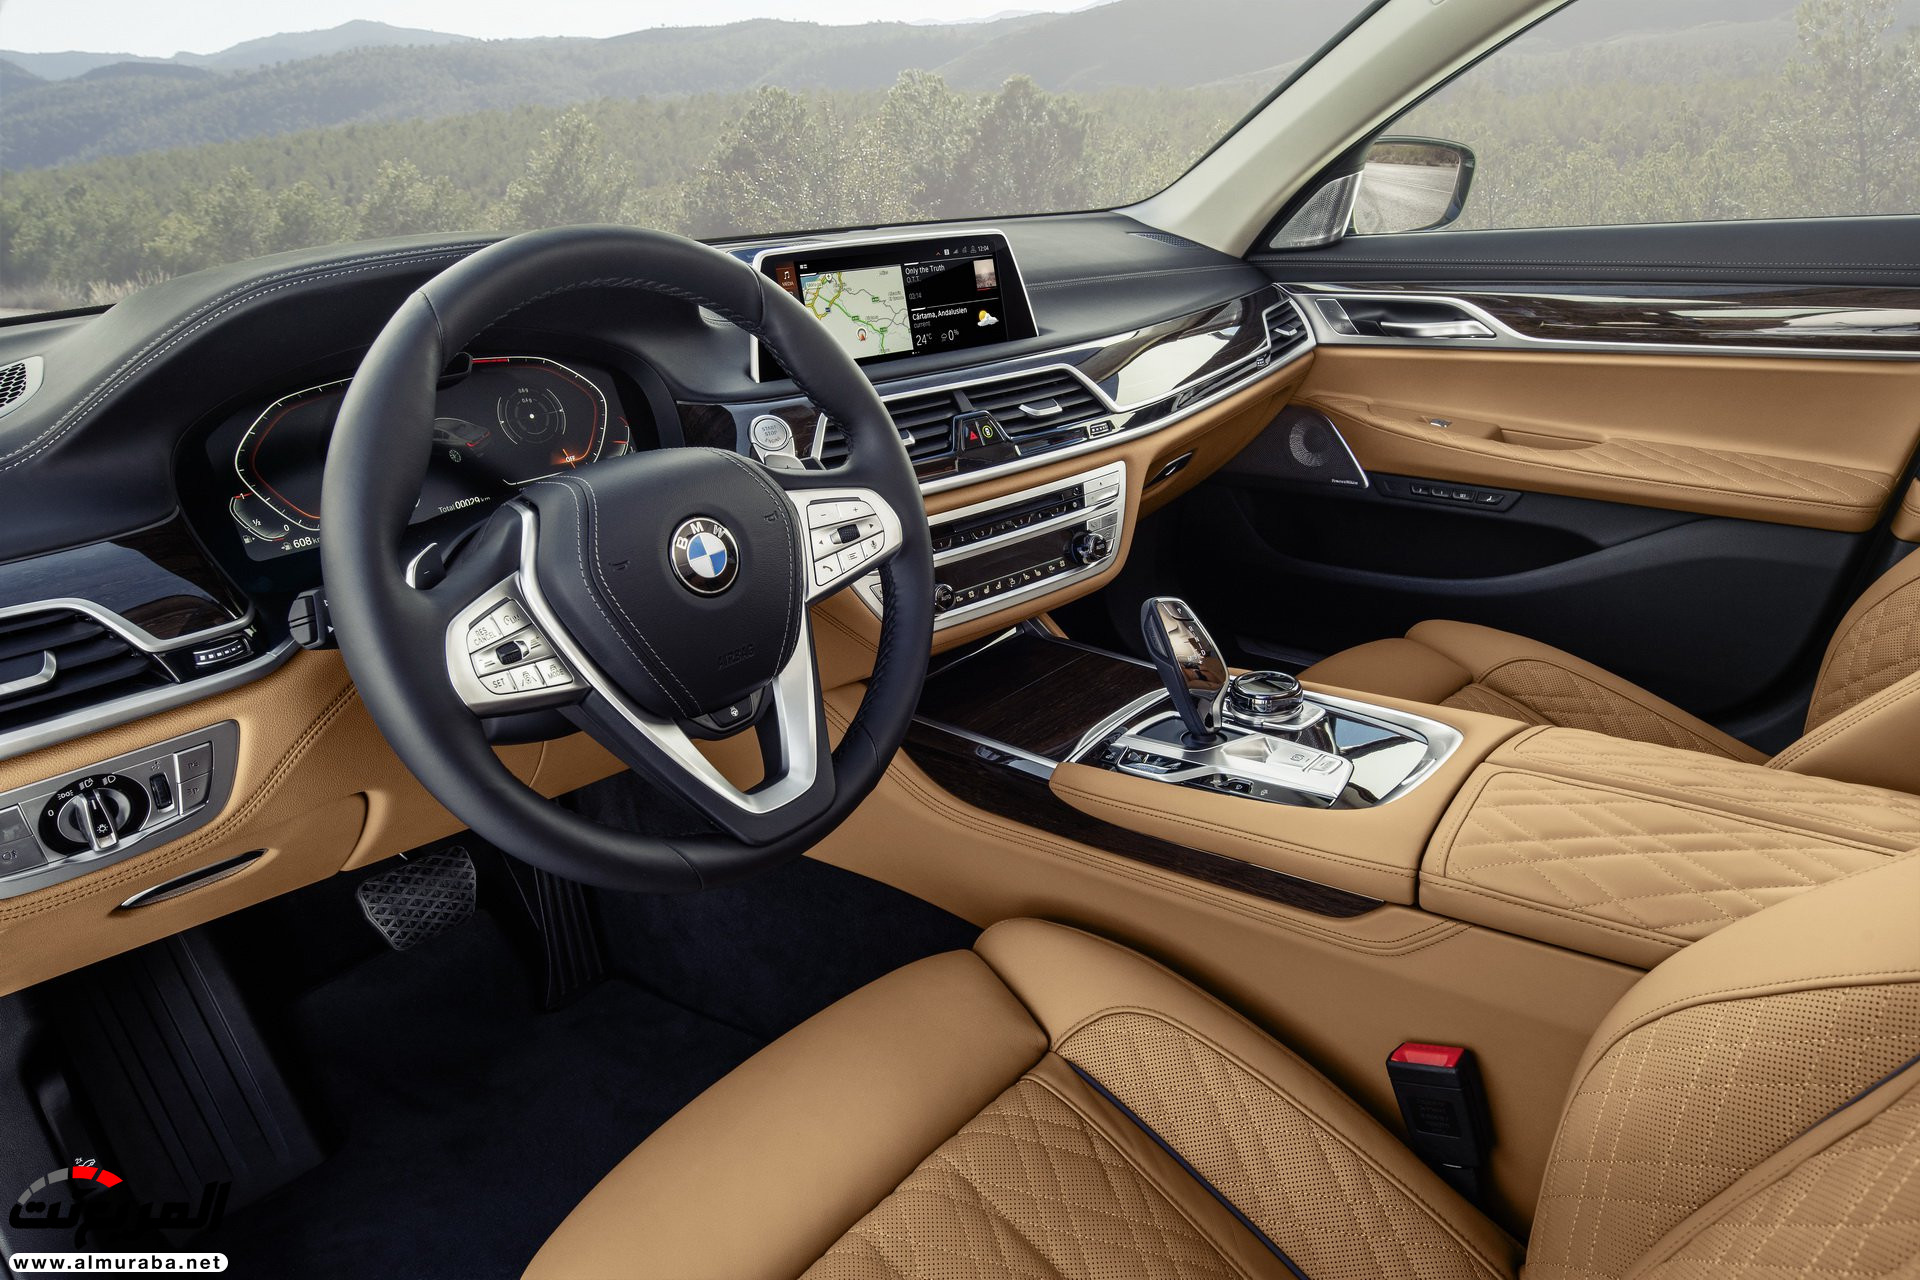 بي ام دبليو الفئة السابعة 2020 المحدثة تكشف نفسها رسمياً "صور ومواصفات" BMW 7 Series 272